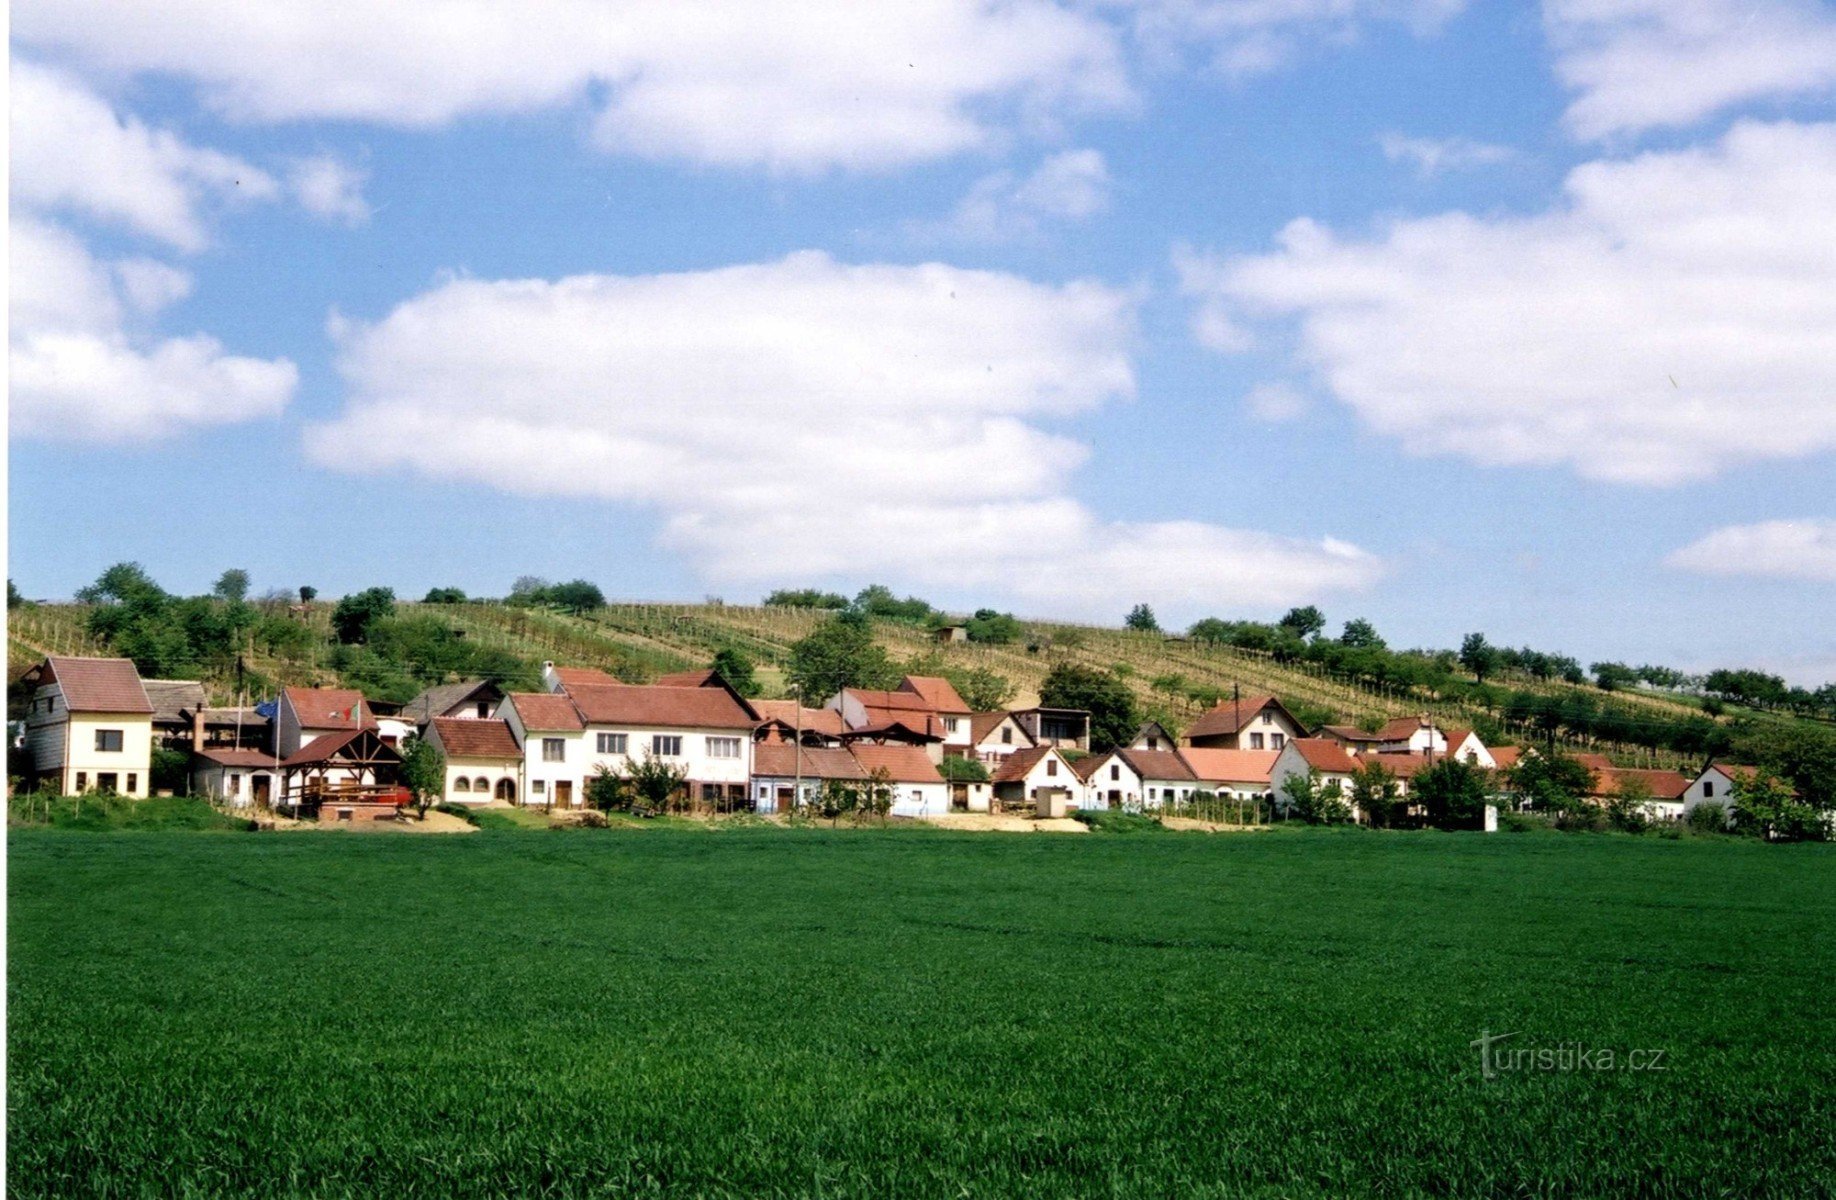 Kravihorské 酒窖区域景观